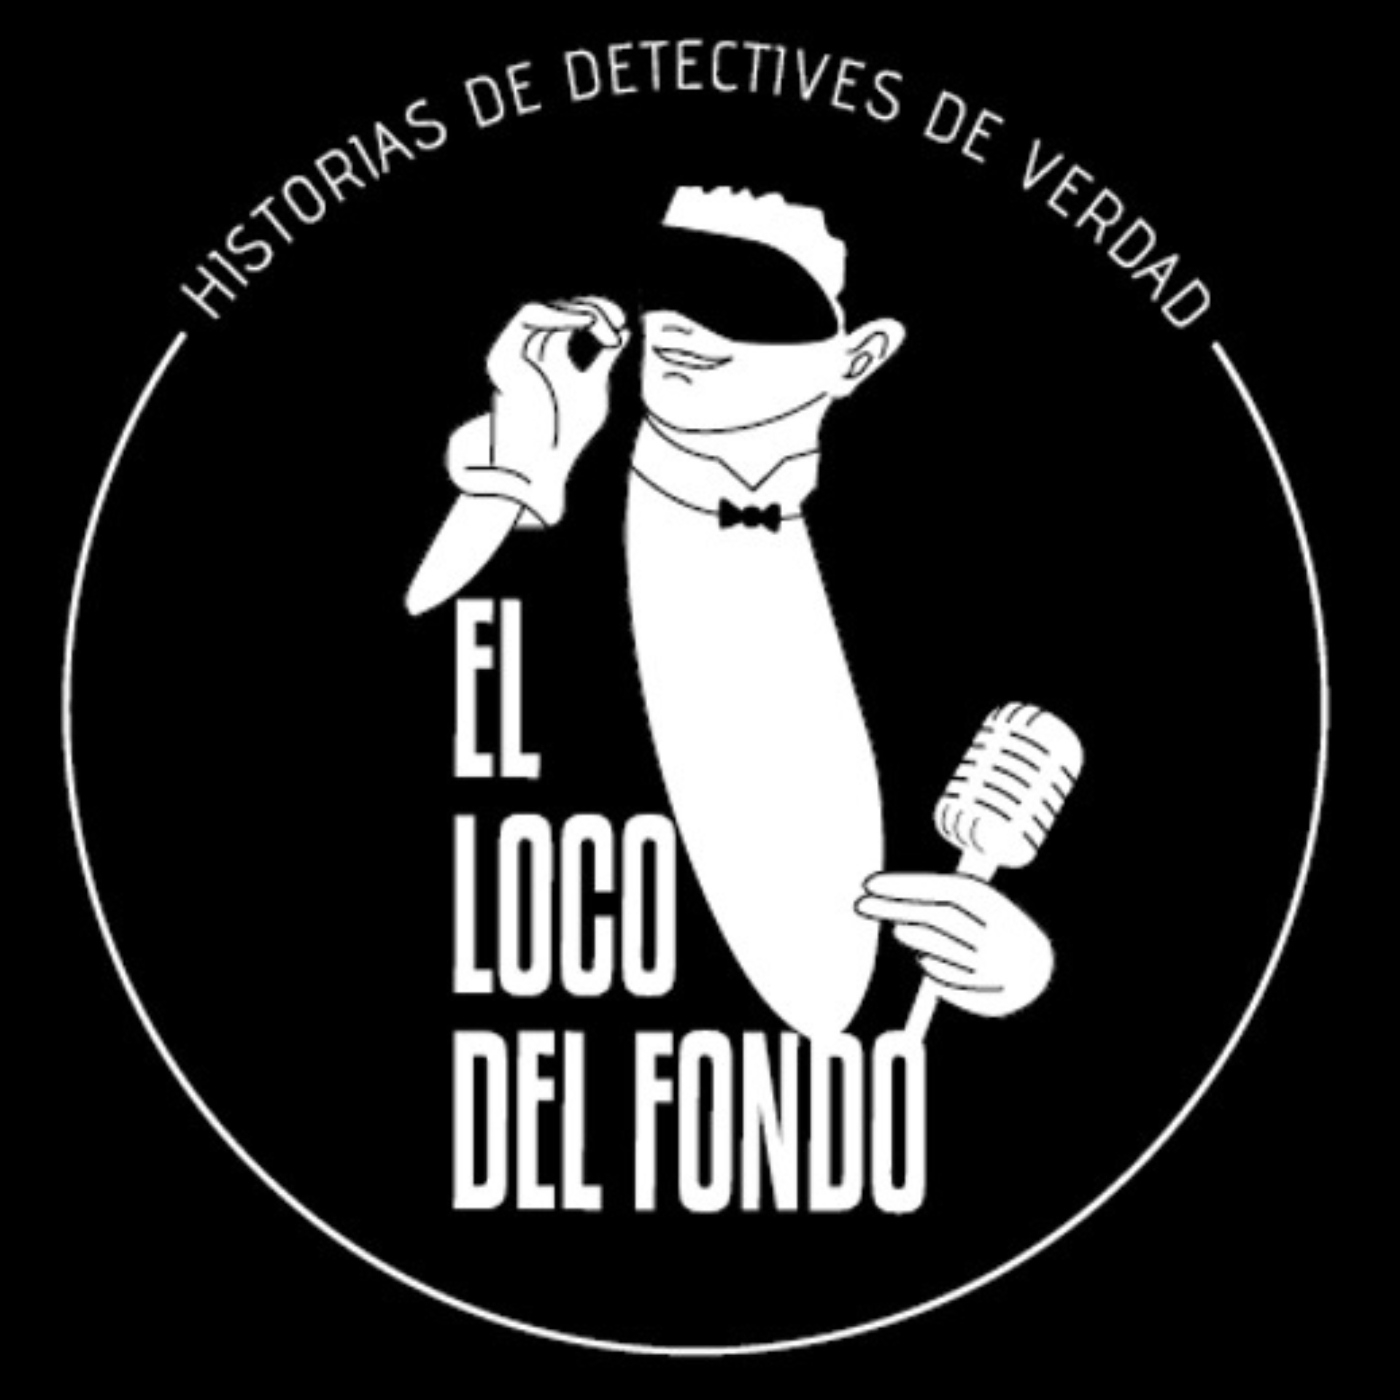 Historias de detectives de verdad